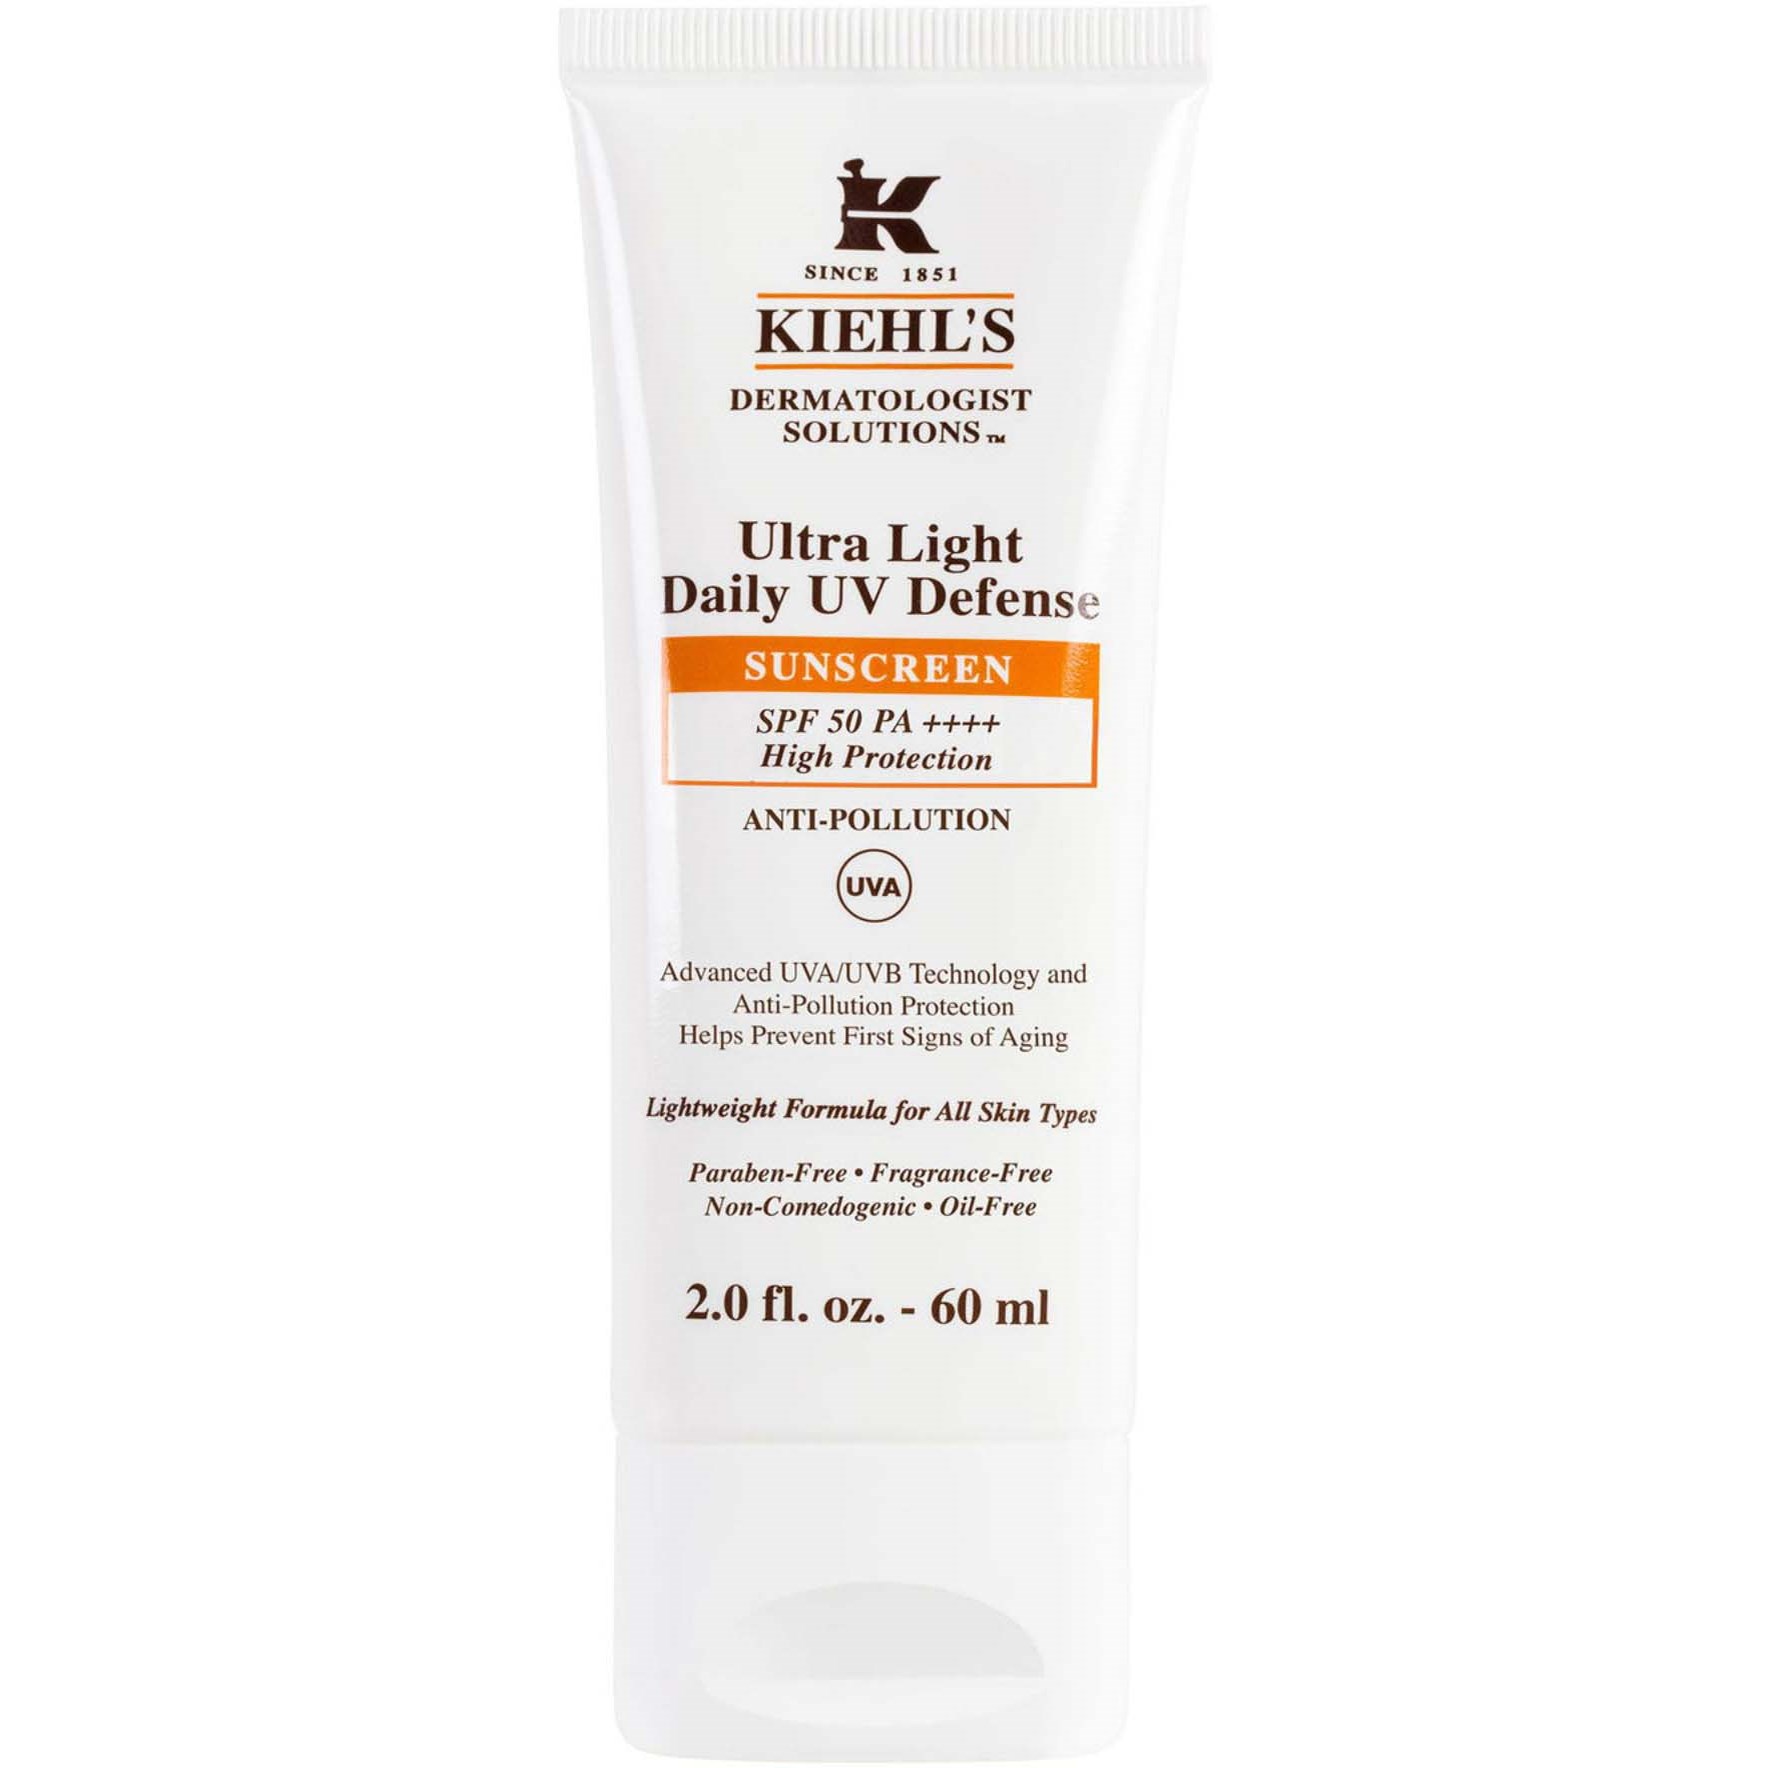 Kiehls Dermatologist Solutions Ultra Light Daily UV Defense SPF 50 60